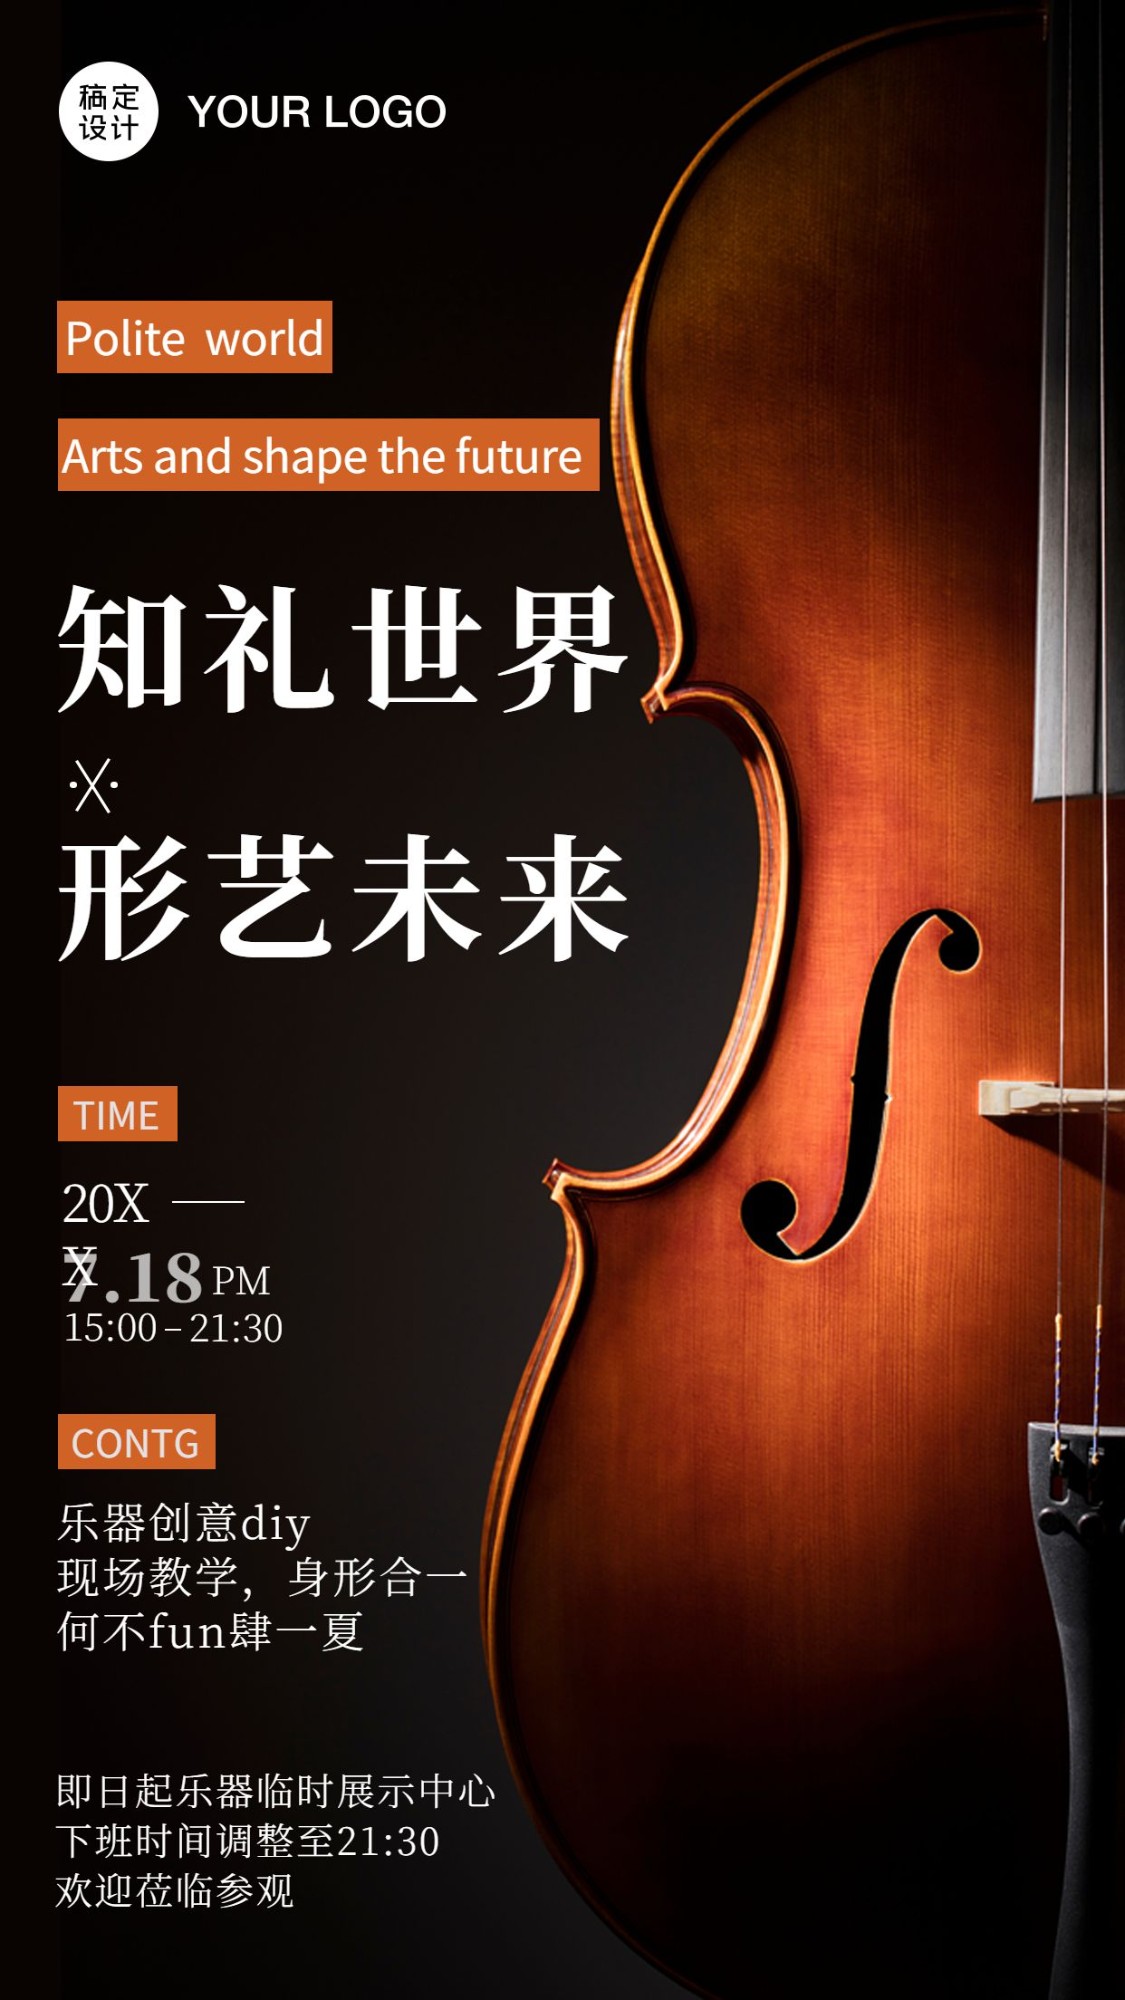 大提琴音乐会课程招生海报预览效果